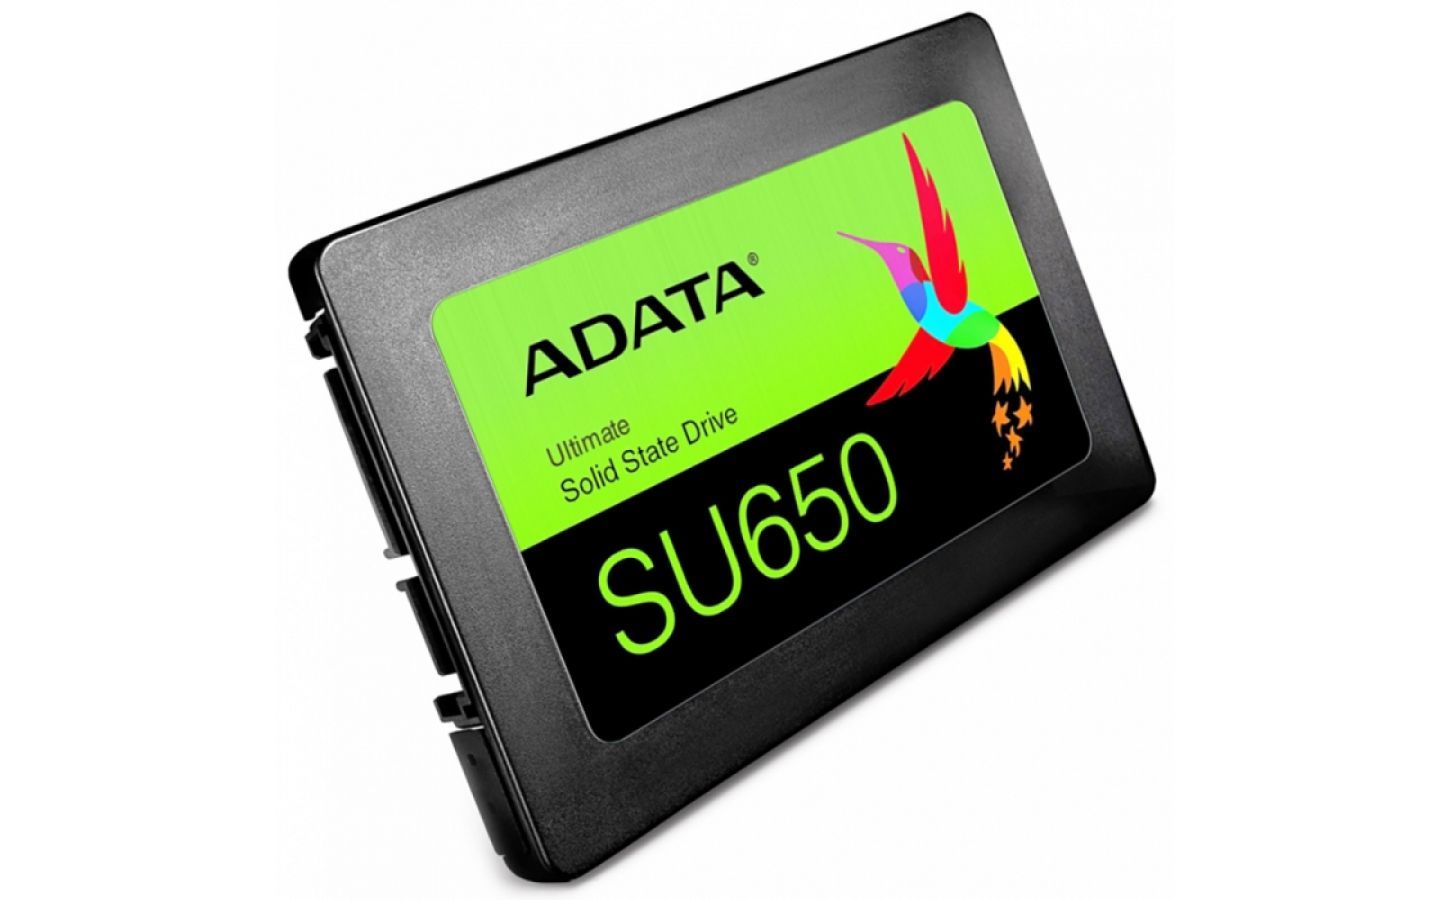 650 240. Asu650ss-240gt-r. 960 ГБ 2.5" SATA накопитель ADATA su630. 240 ГБ 2.5" SATA накопитель a-data su650 [asu650ss-240gt-r]. A-data SSD 240 su650.